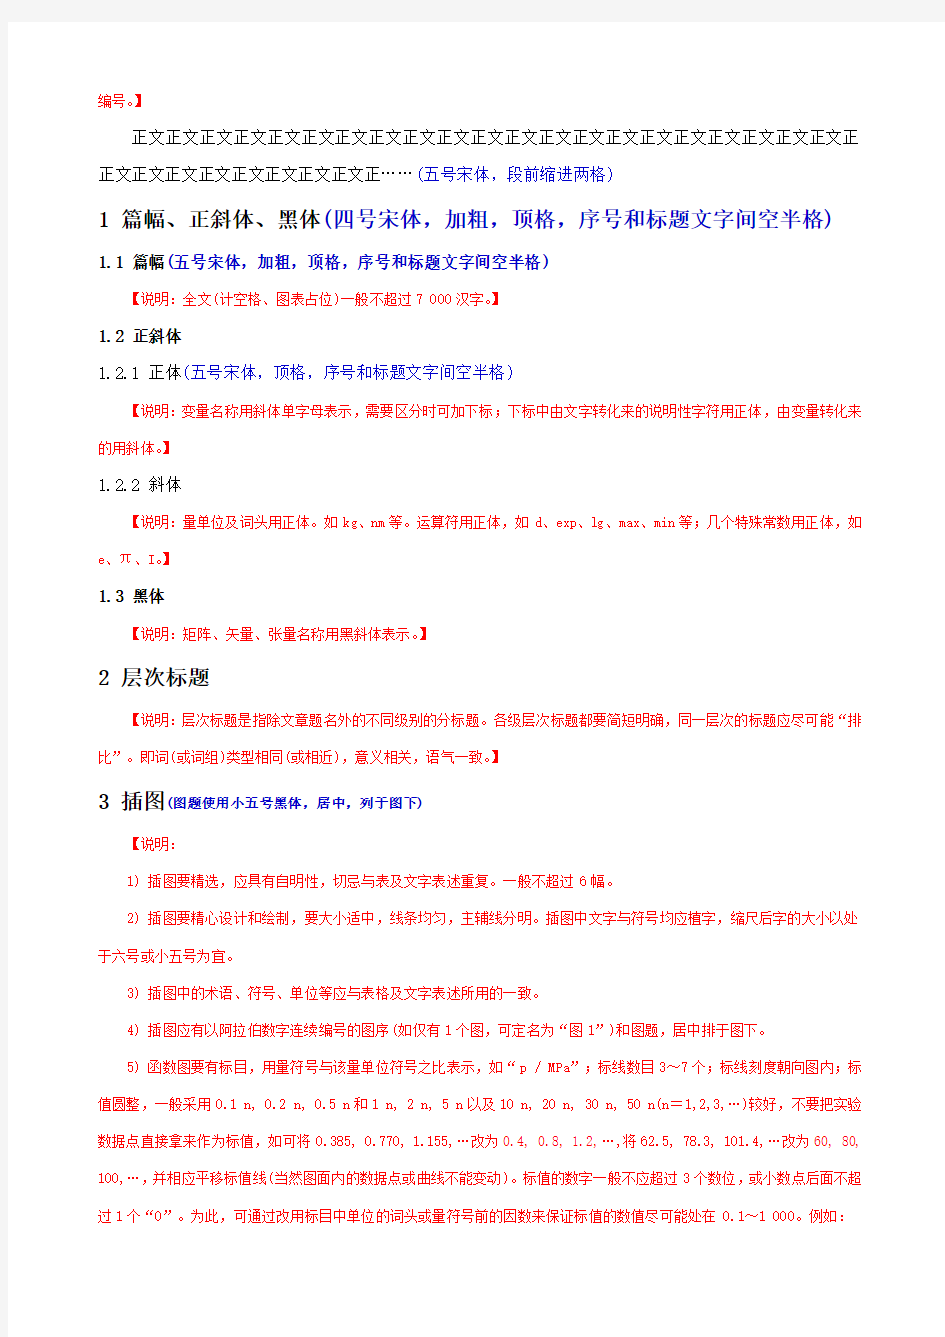 中文核心期刊论文模板(含基本格式和内容要求)